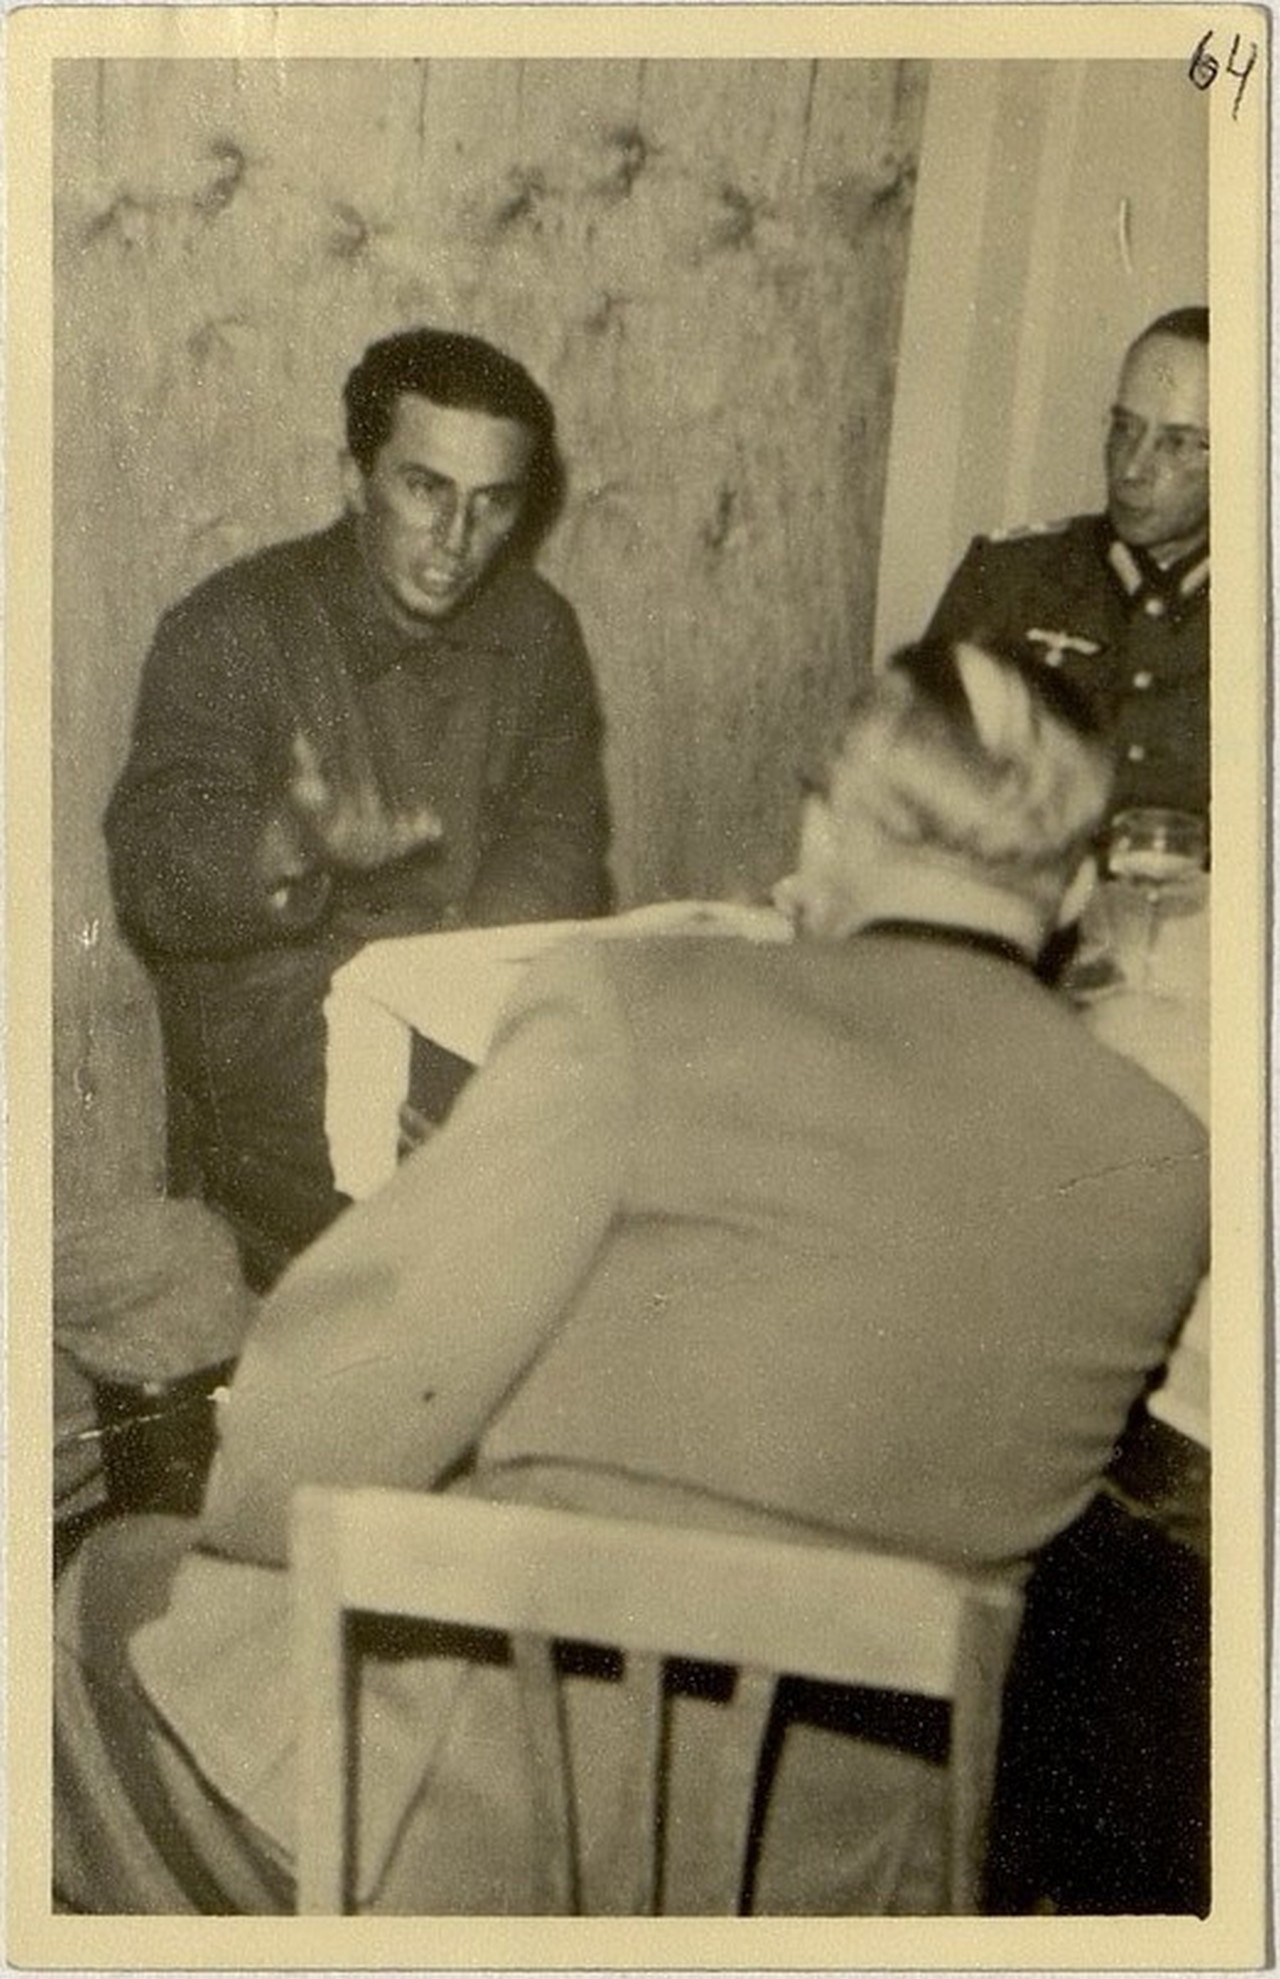 Допрос в Борисове 19 июля 1941 г. Штрик-Штрикфельдт сидит спиной.